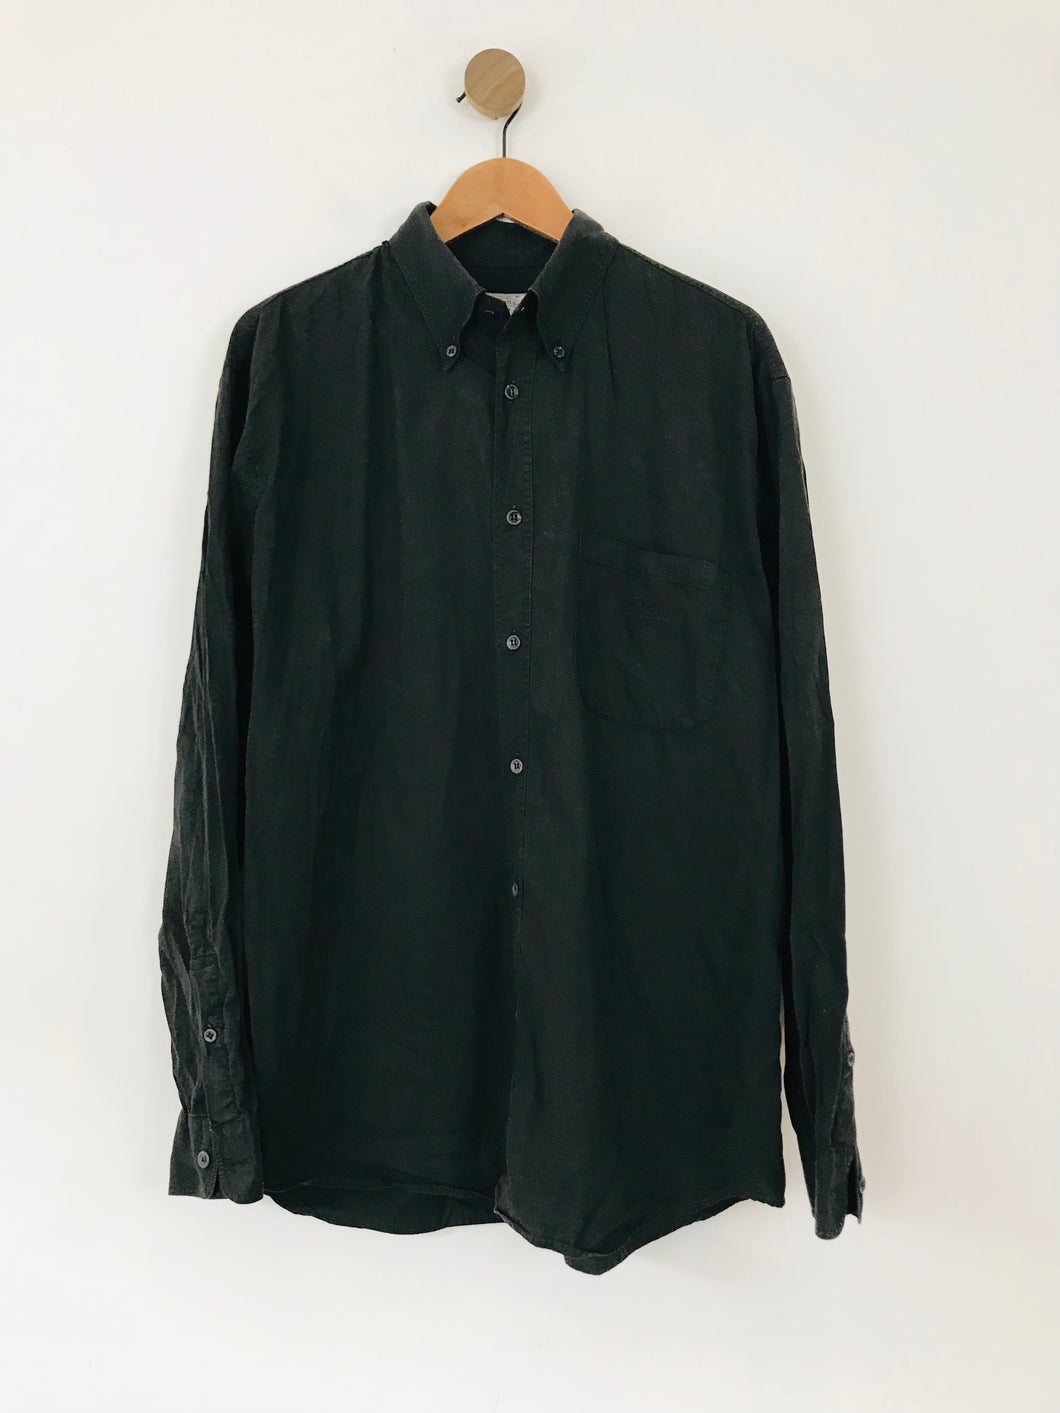 Armani Jeans Men's Casual Button-Up Shirt | XL | Black